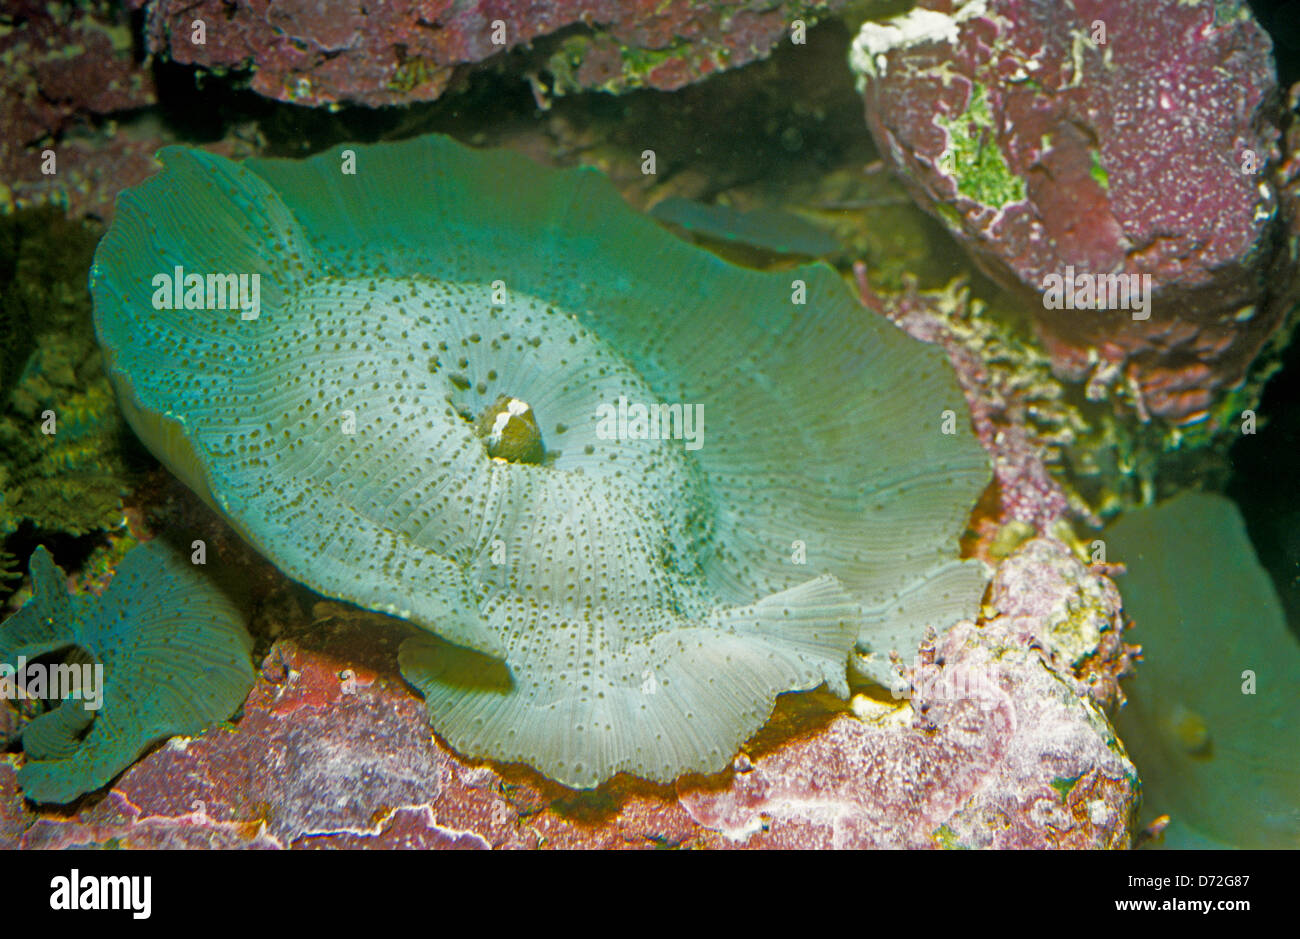 Mushroom coral, Discosoma sp., Discosomatidae, Indo-pacific ocean Stock Photo